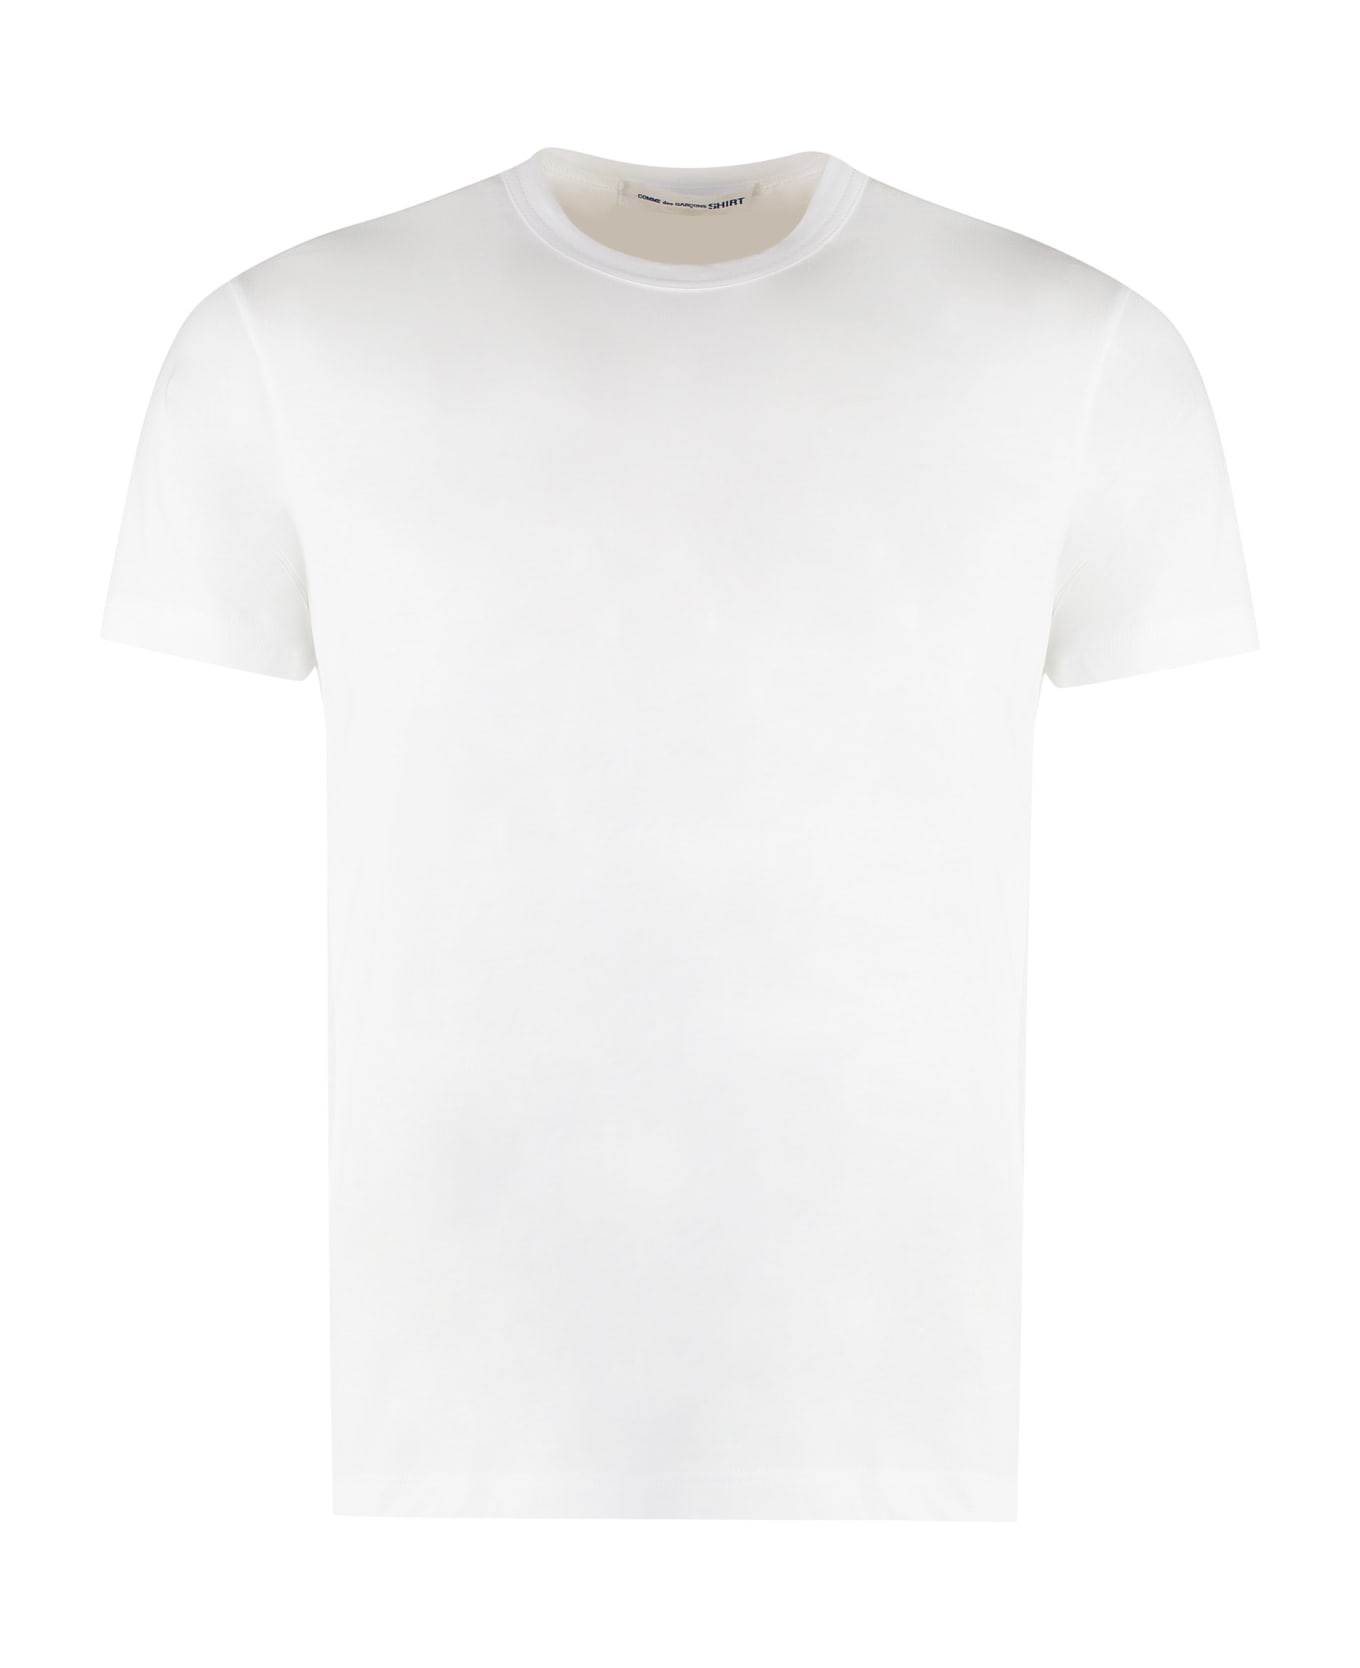 Comme des Garçons Shirt Cotton Crew-neck T-shirt - White シャツ